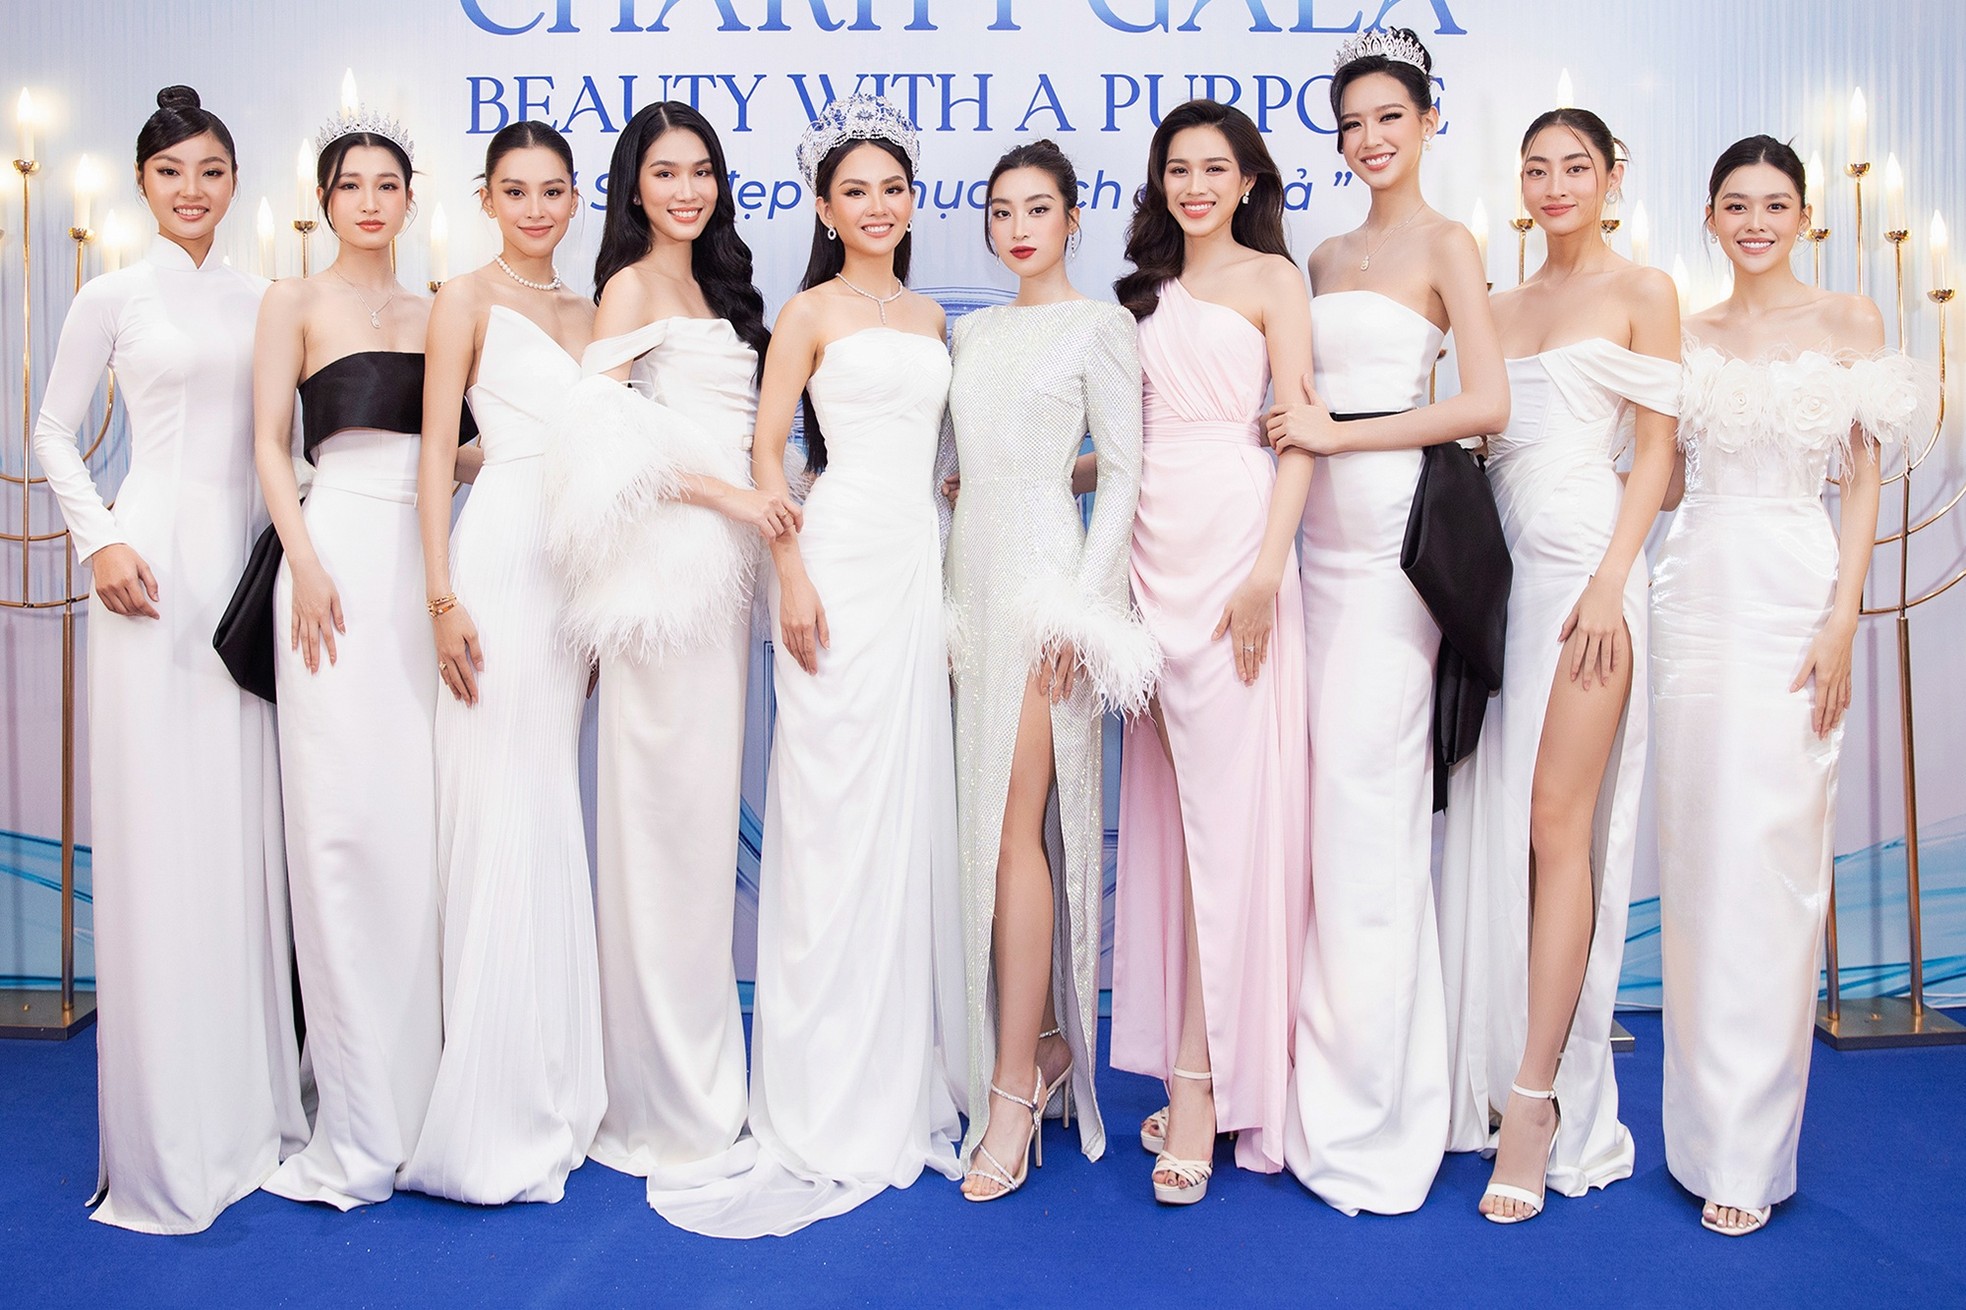 Thưởng Tết ở công ty giải trí, quản lý hoa hậu Việt có hơn 200 nhân viên - Ảnh 1.